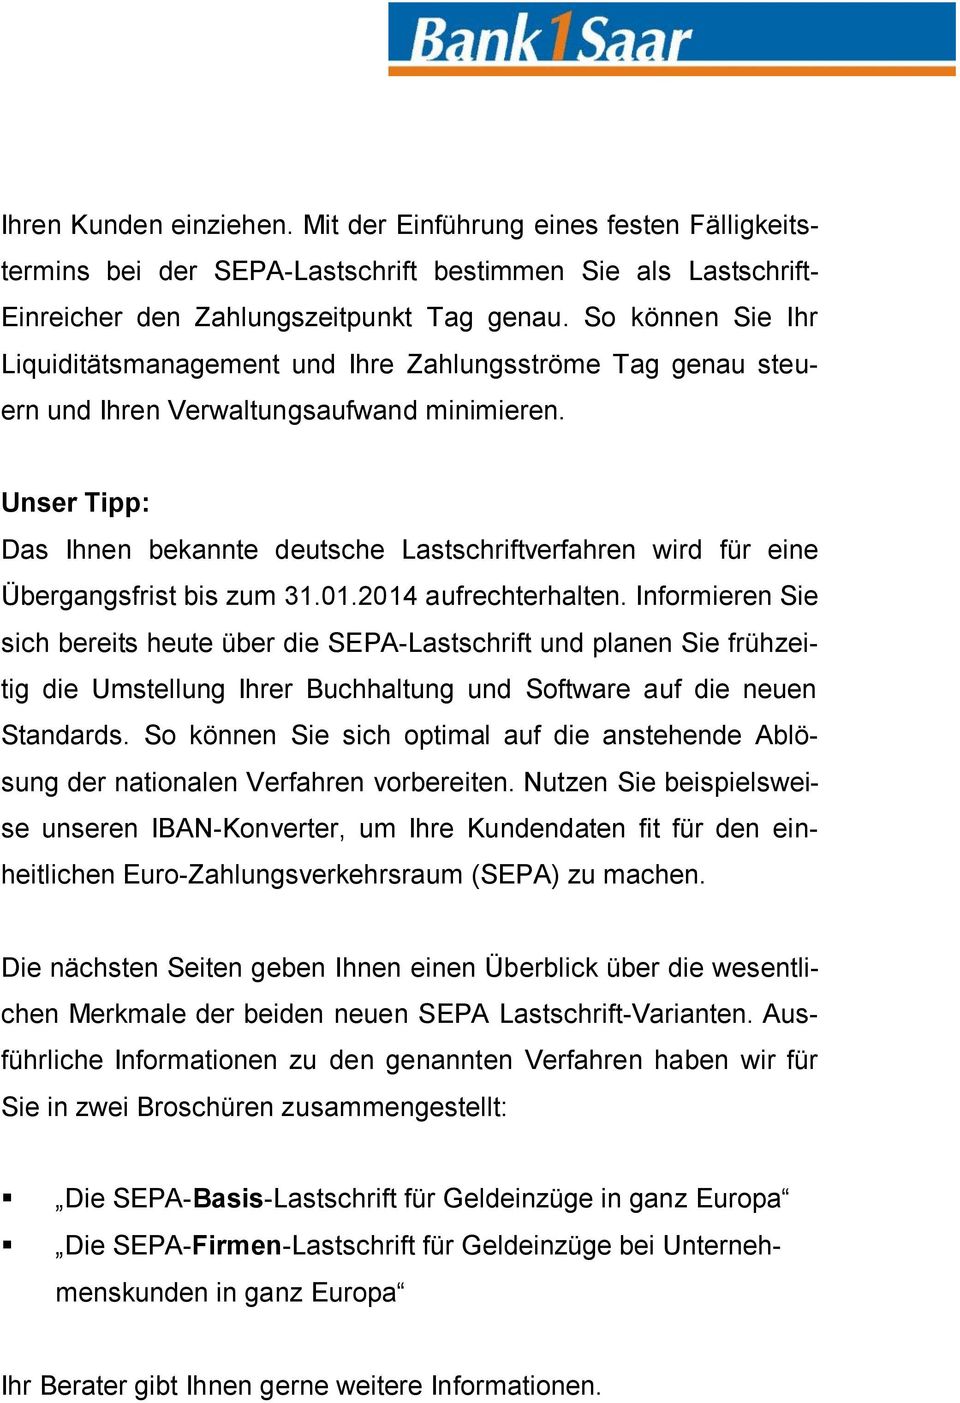 Unser Tipp: Das Ihnen bekannte deutsche Lastschriftverfahren wird für eine Übergangsfrist bis zum 31.01.2014 aufrechterhalten.